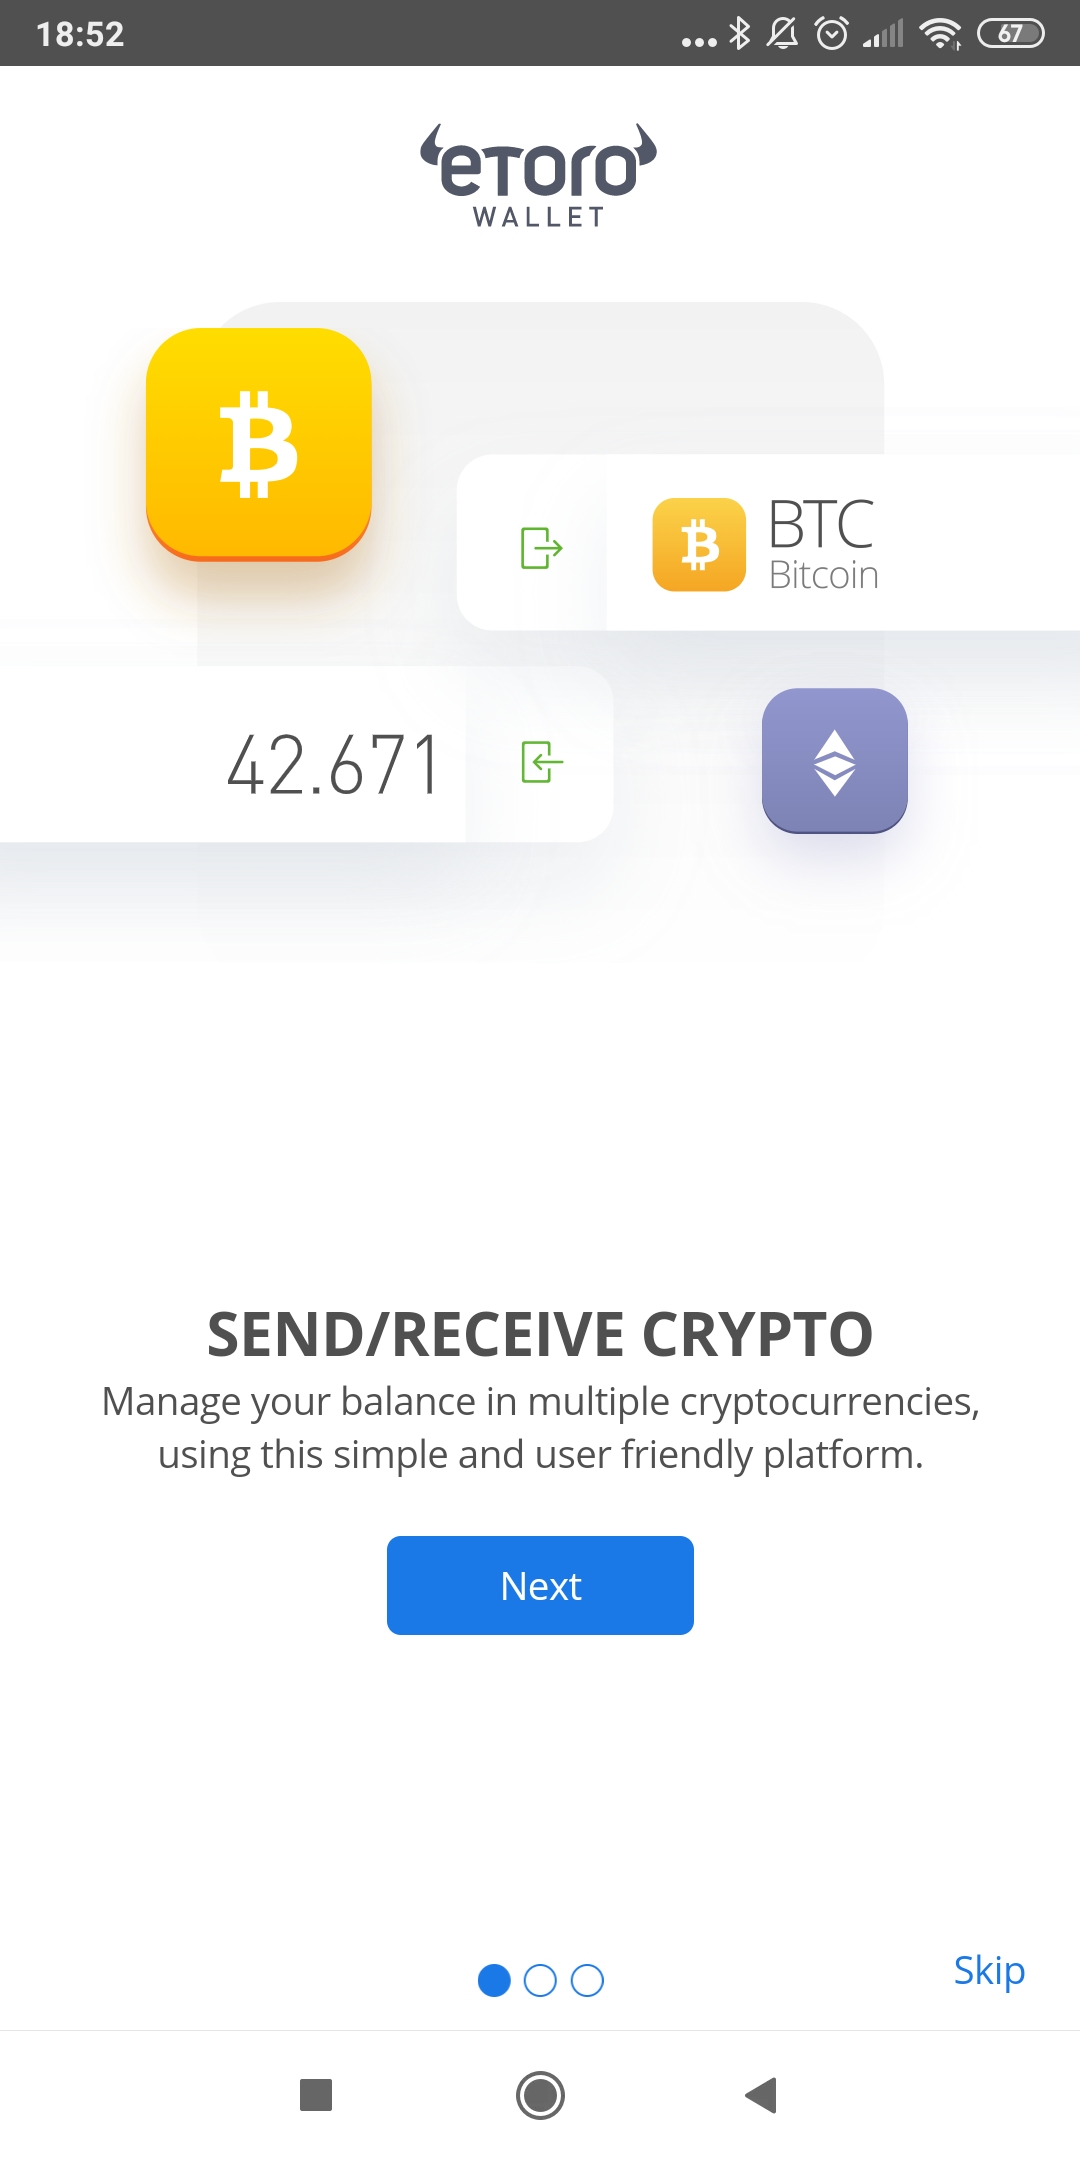 inviare bitcoin al portafoglio